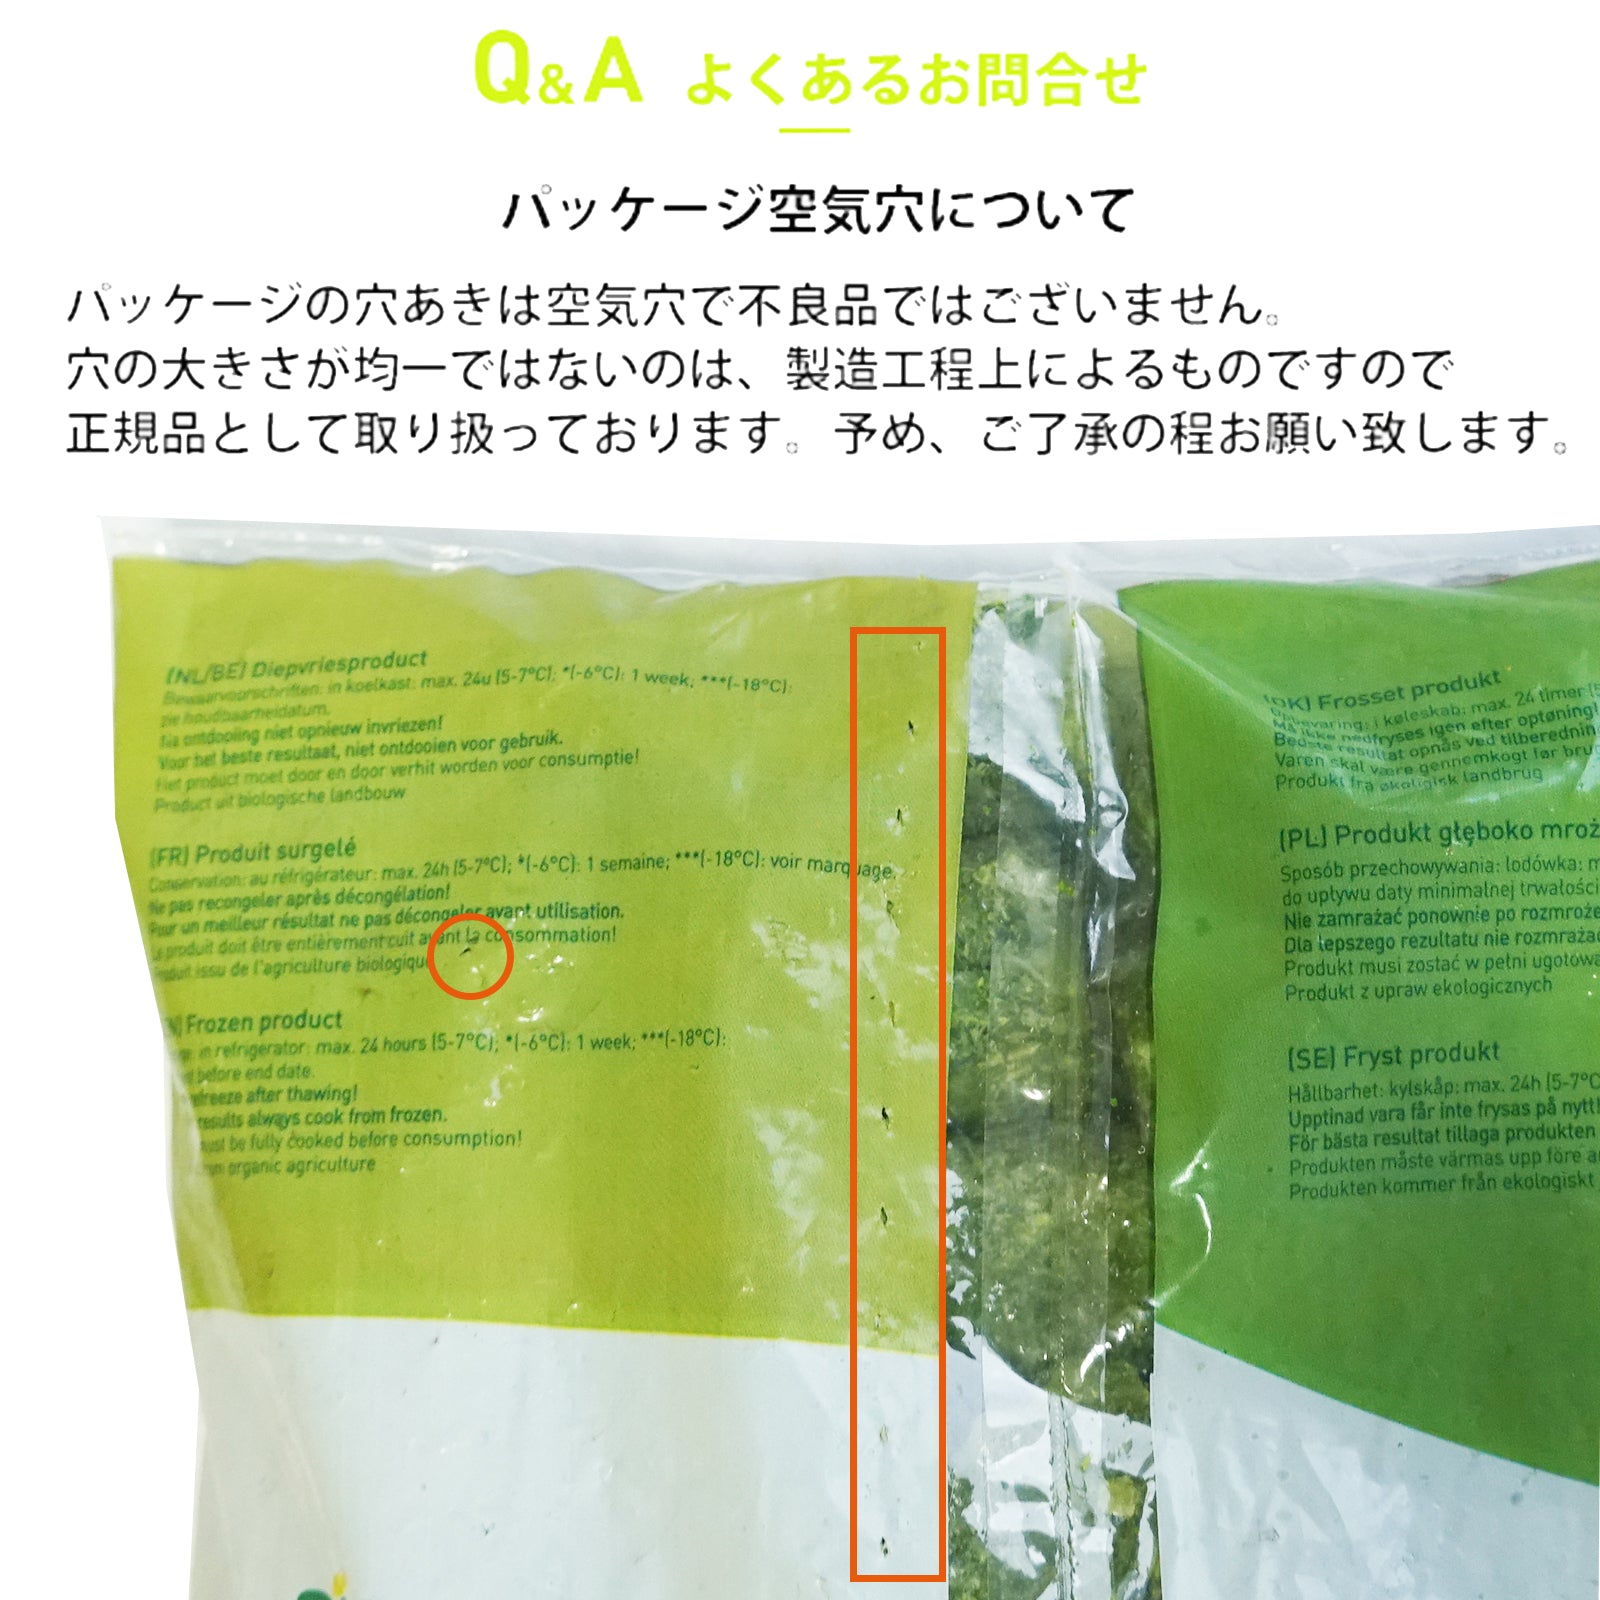 有機 JAS オーガニック 冷凍 スイートコーン スペイン産 化学物質不使用 (2.5kg) ホライズンファームズ